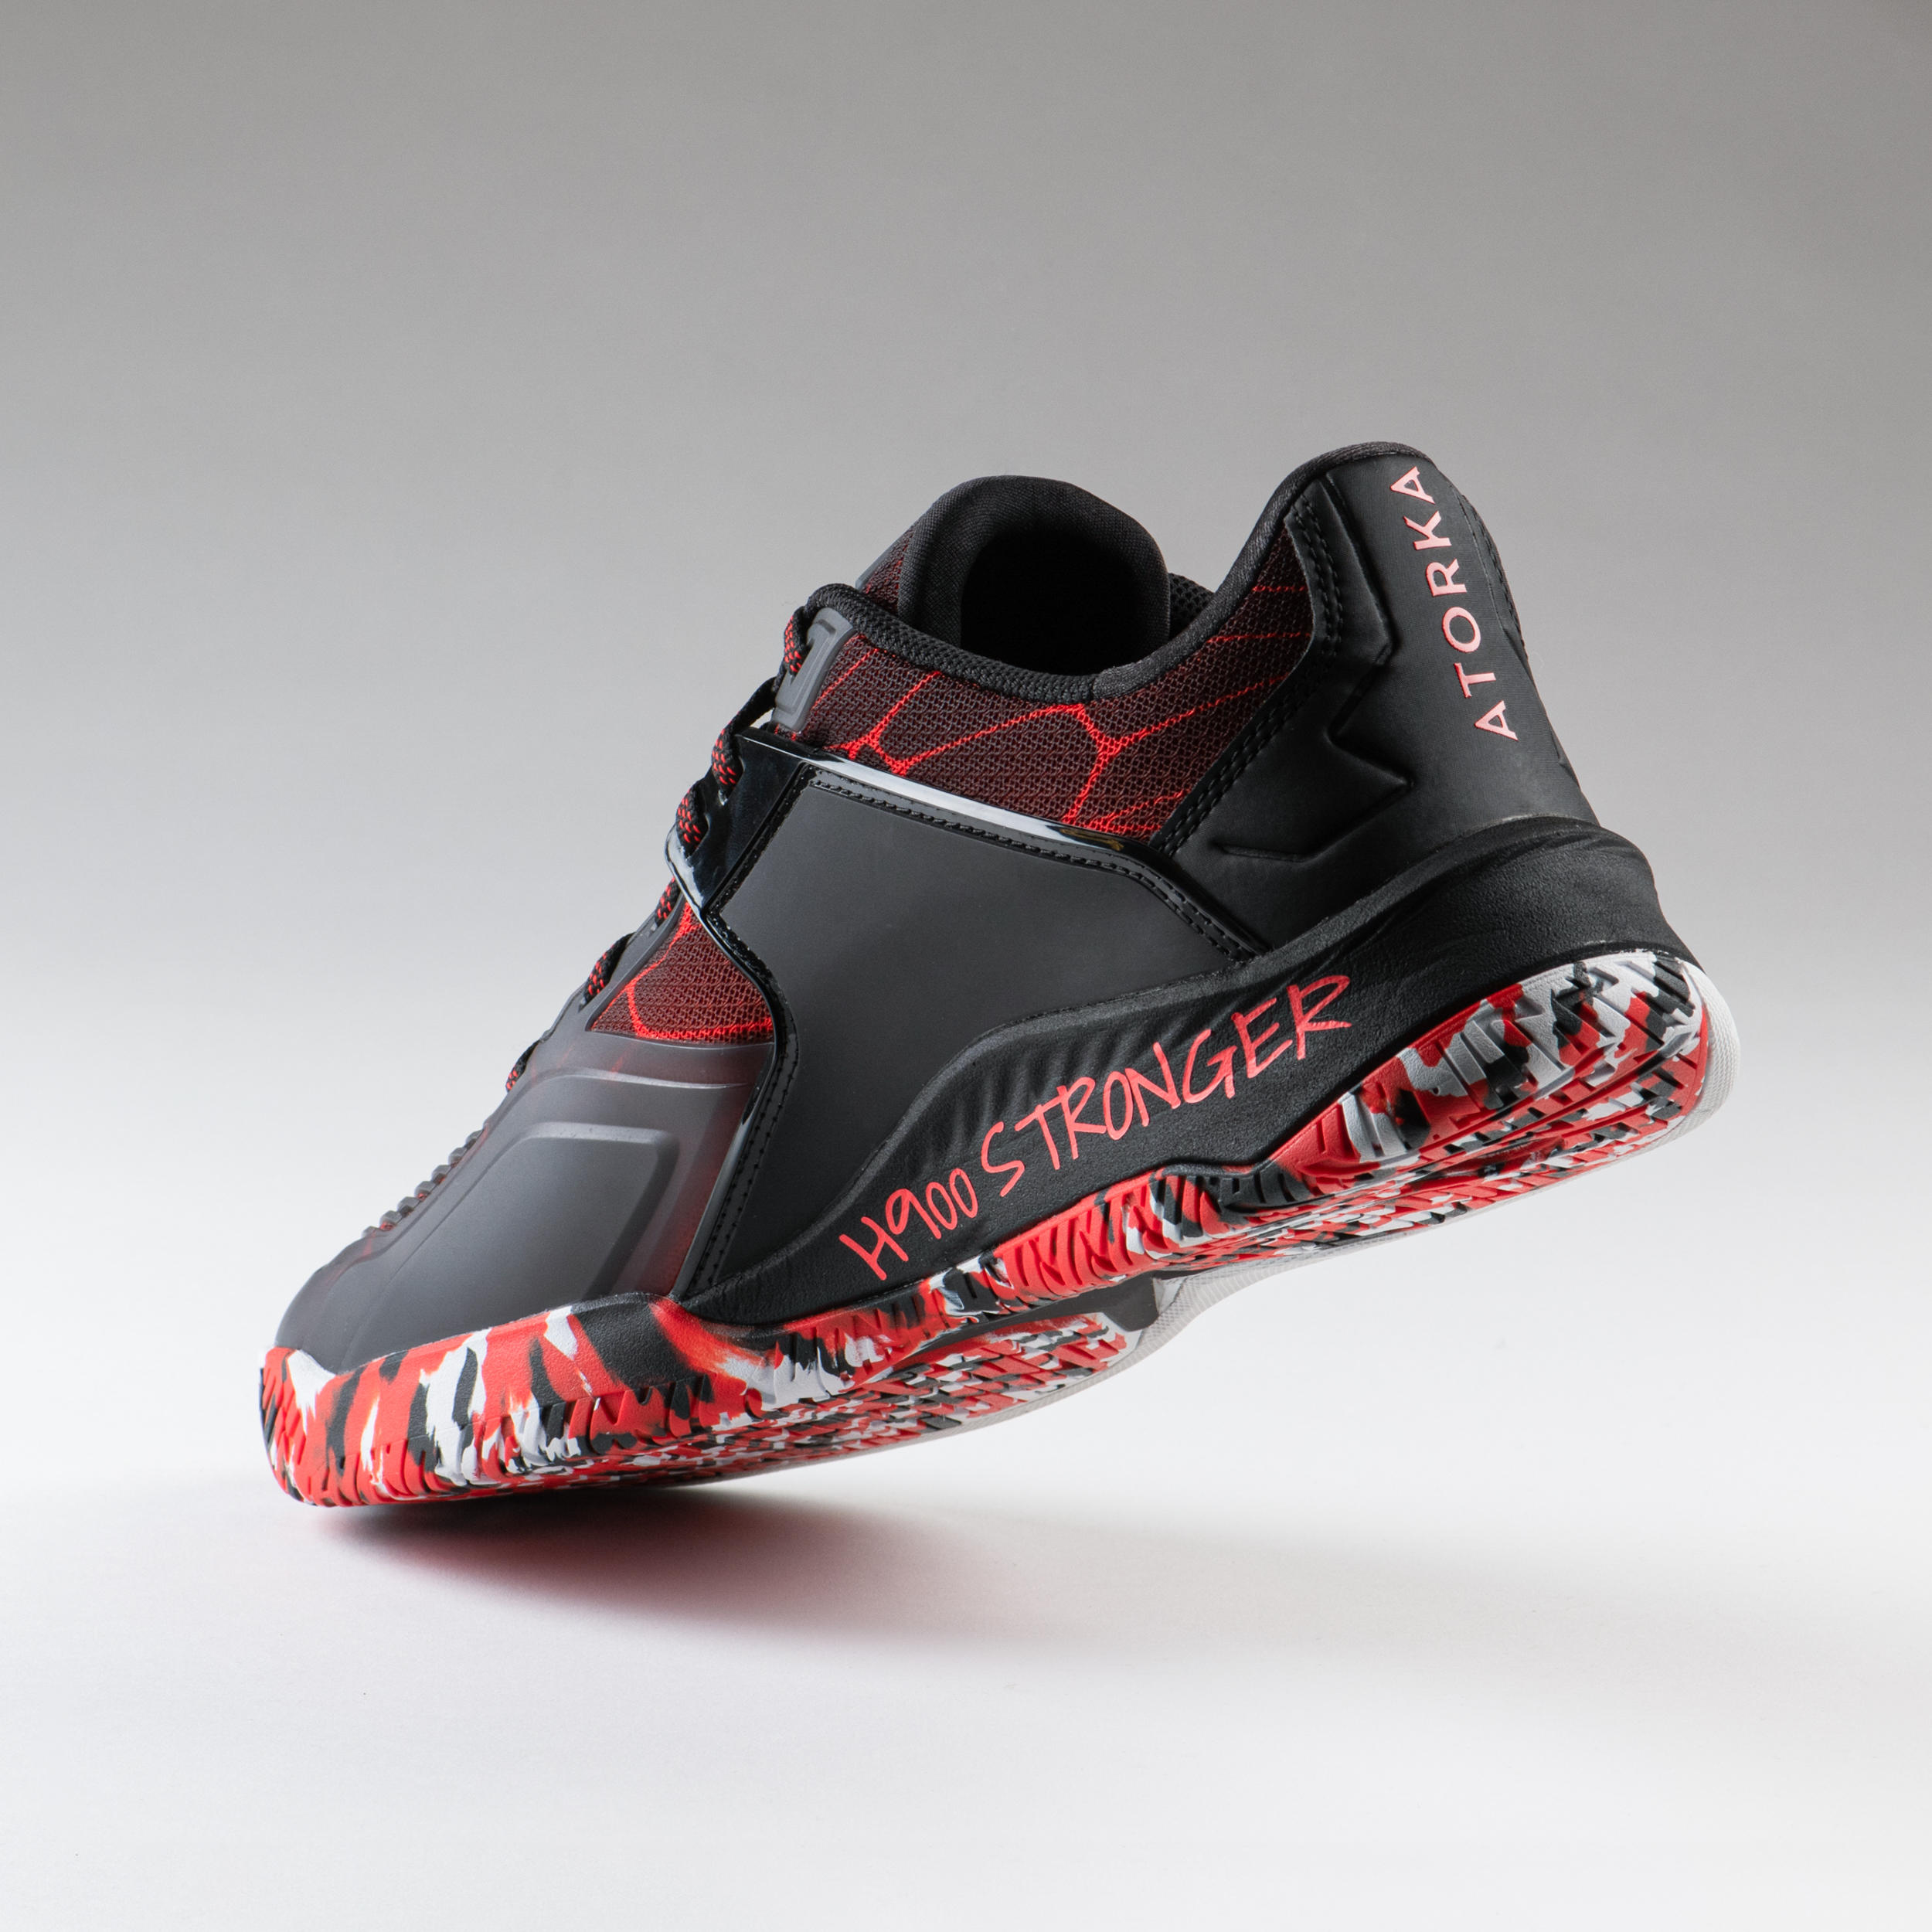 Men's Handball Shoes H900 Stronger - Black/Red 2/7